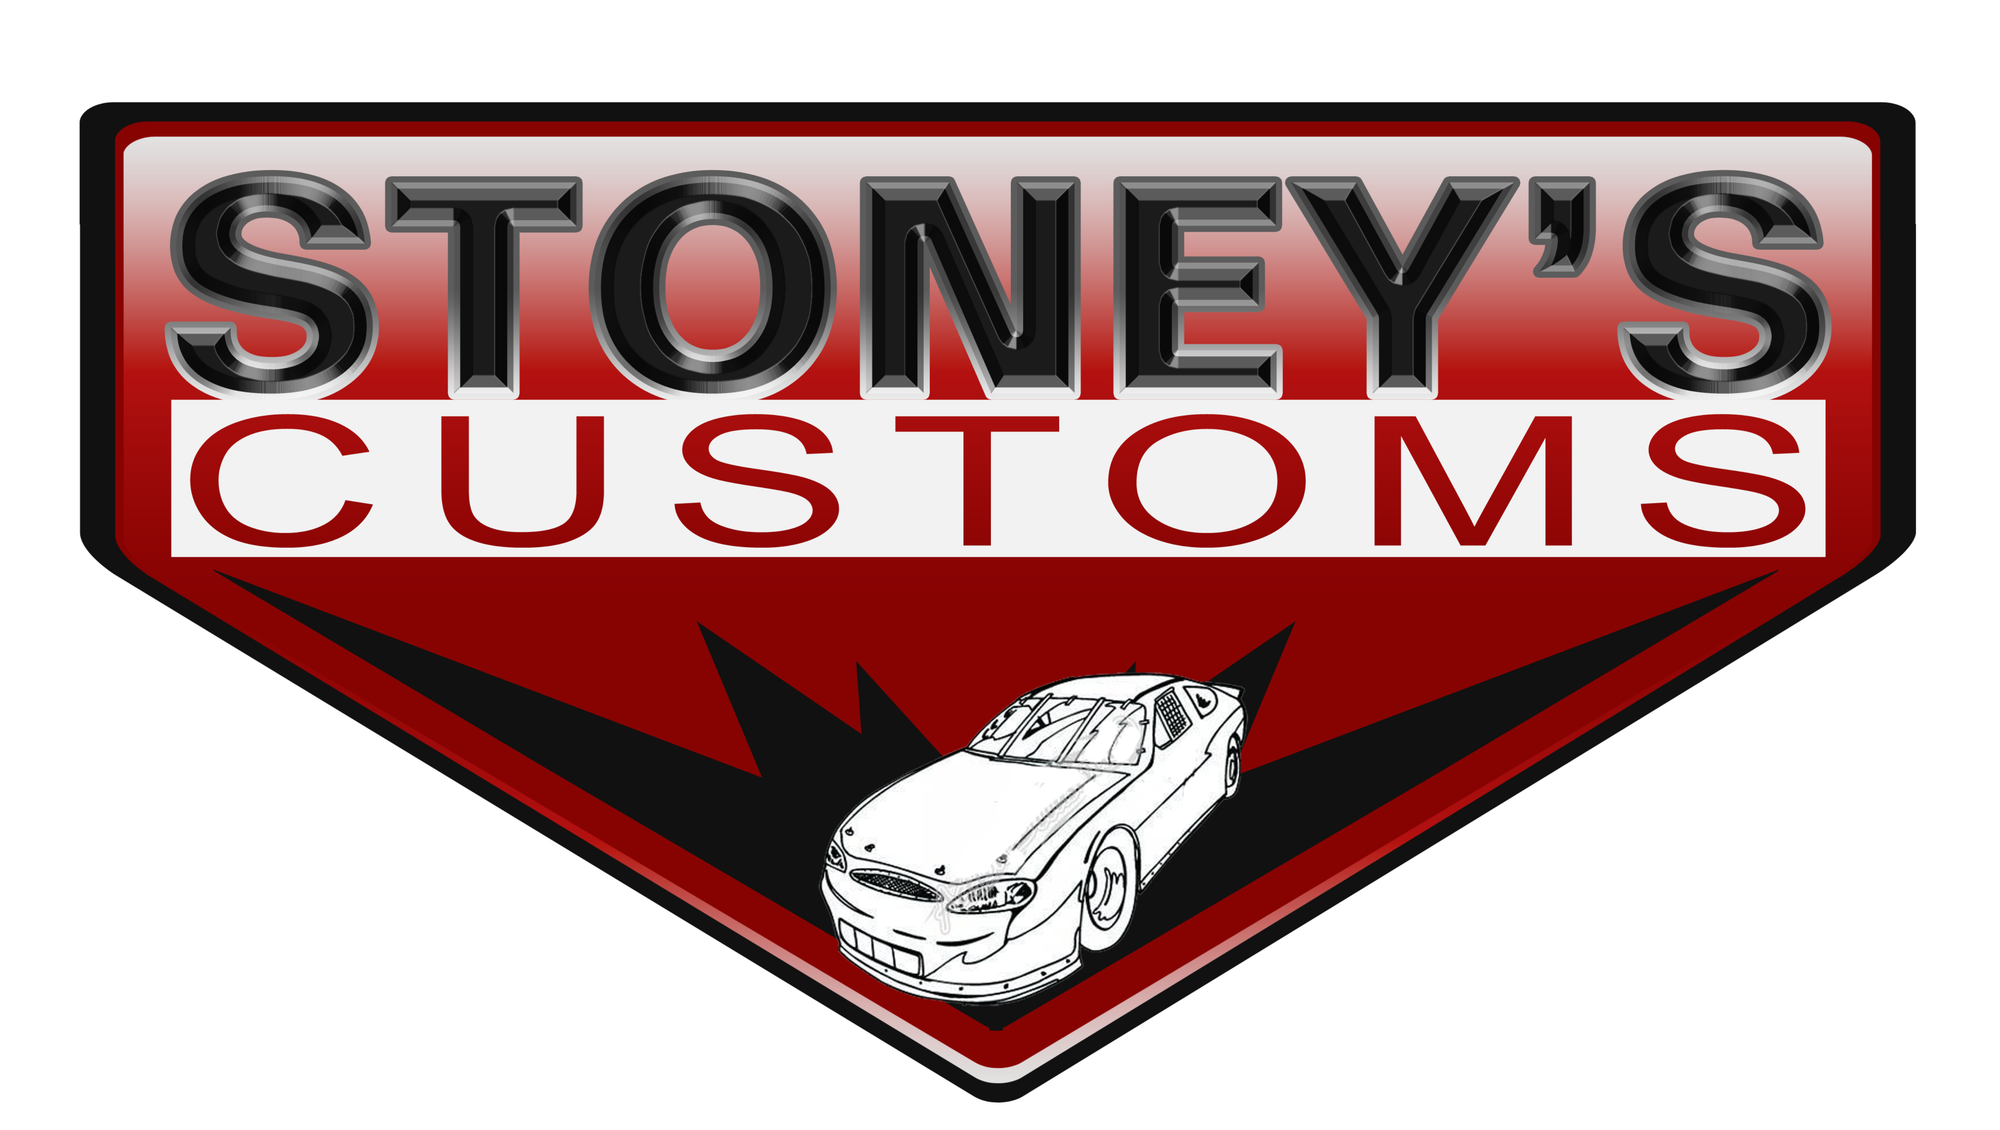 Stoney's Customs Accessory Sheets